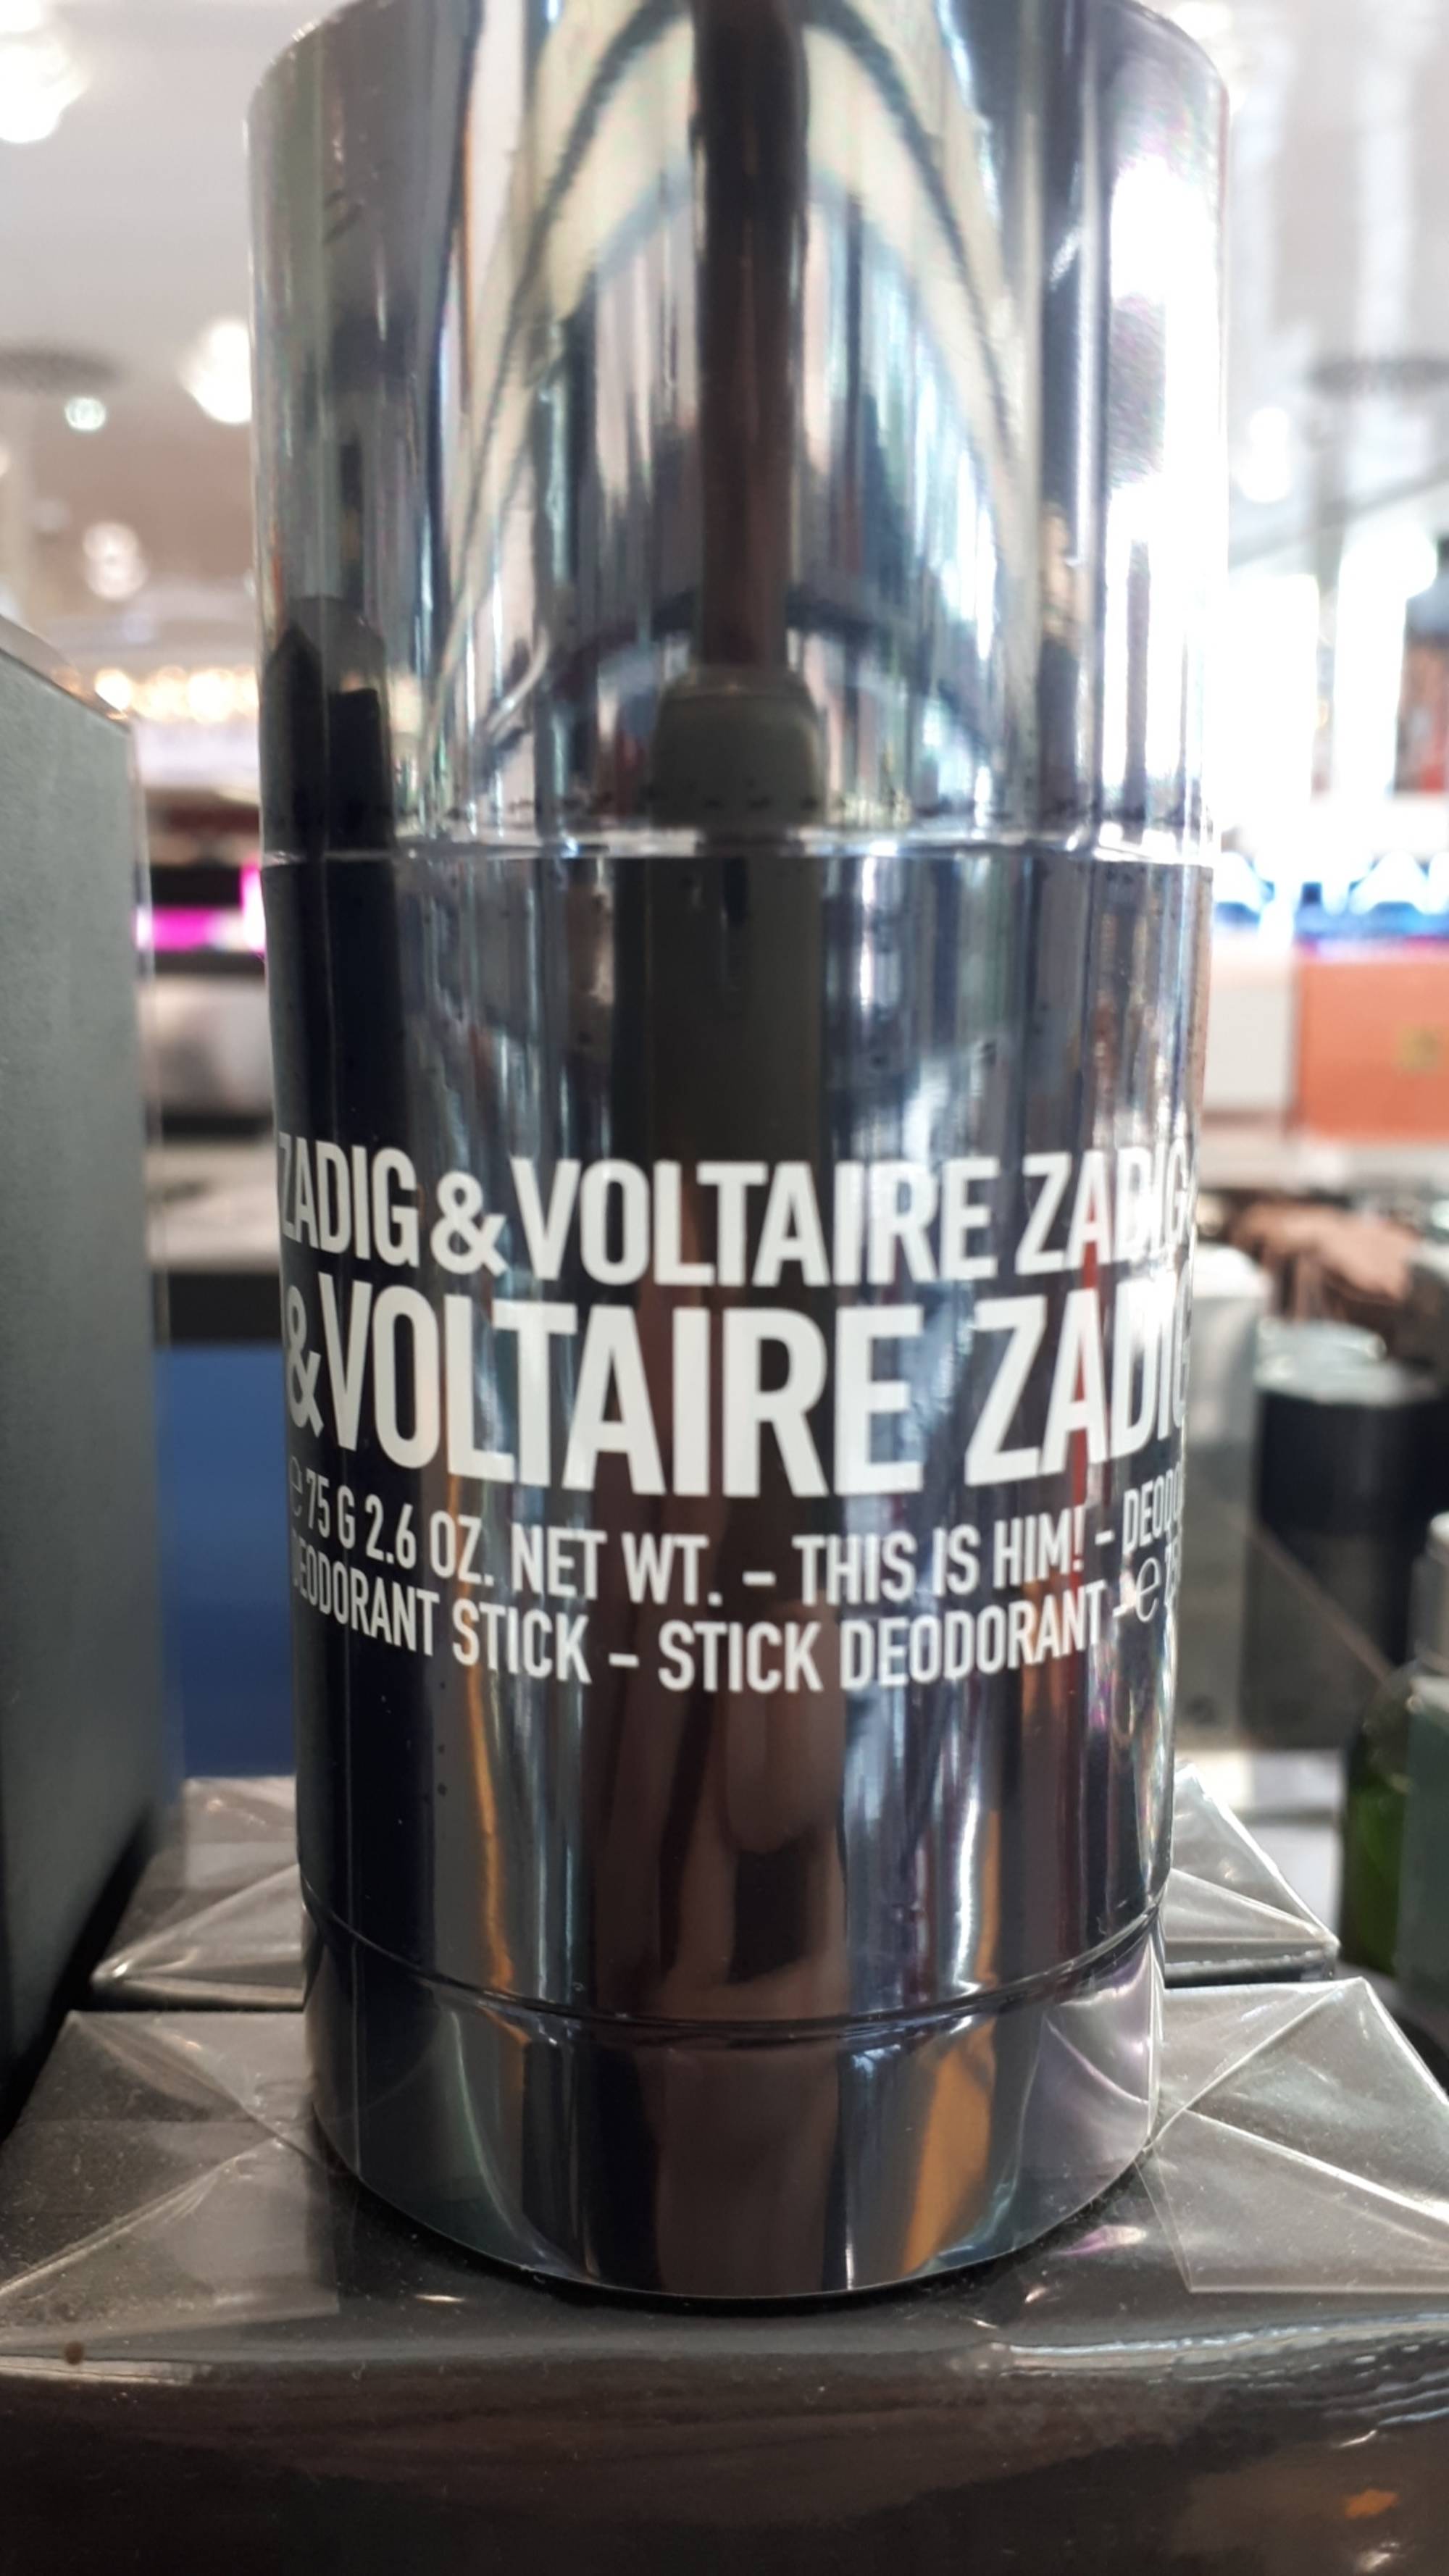 ZADIG & VOLTAIRE - This is him! - Stick Deodorant 